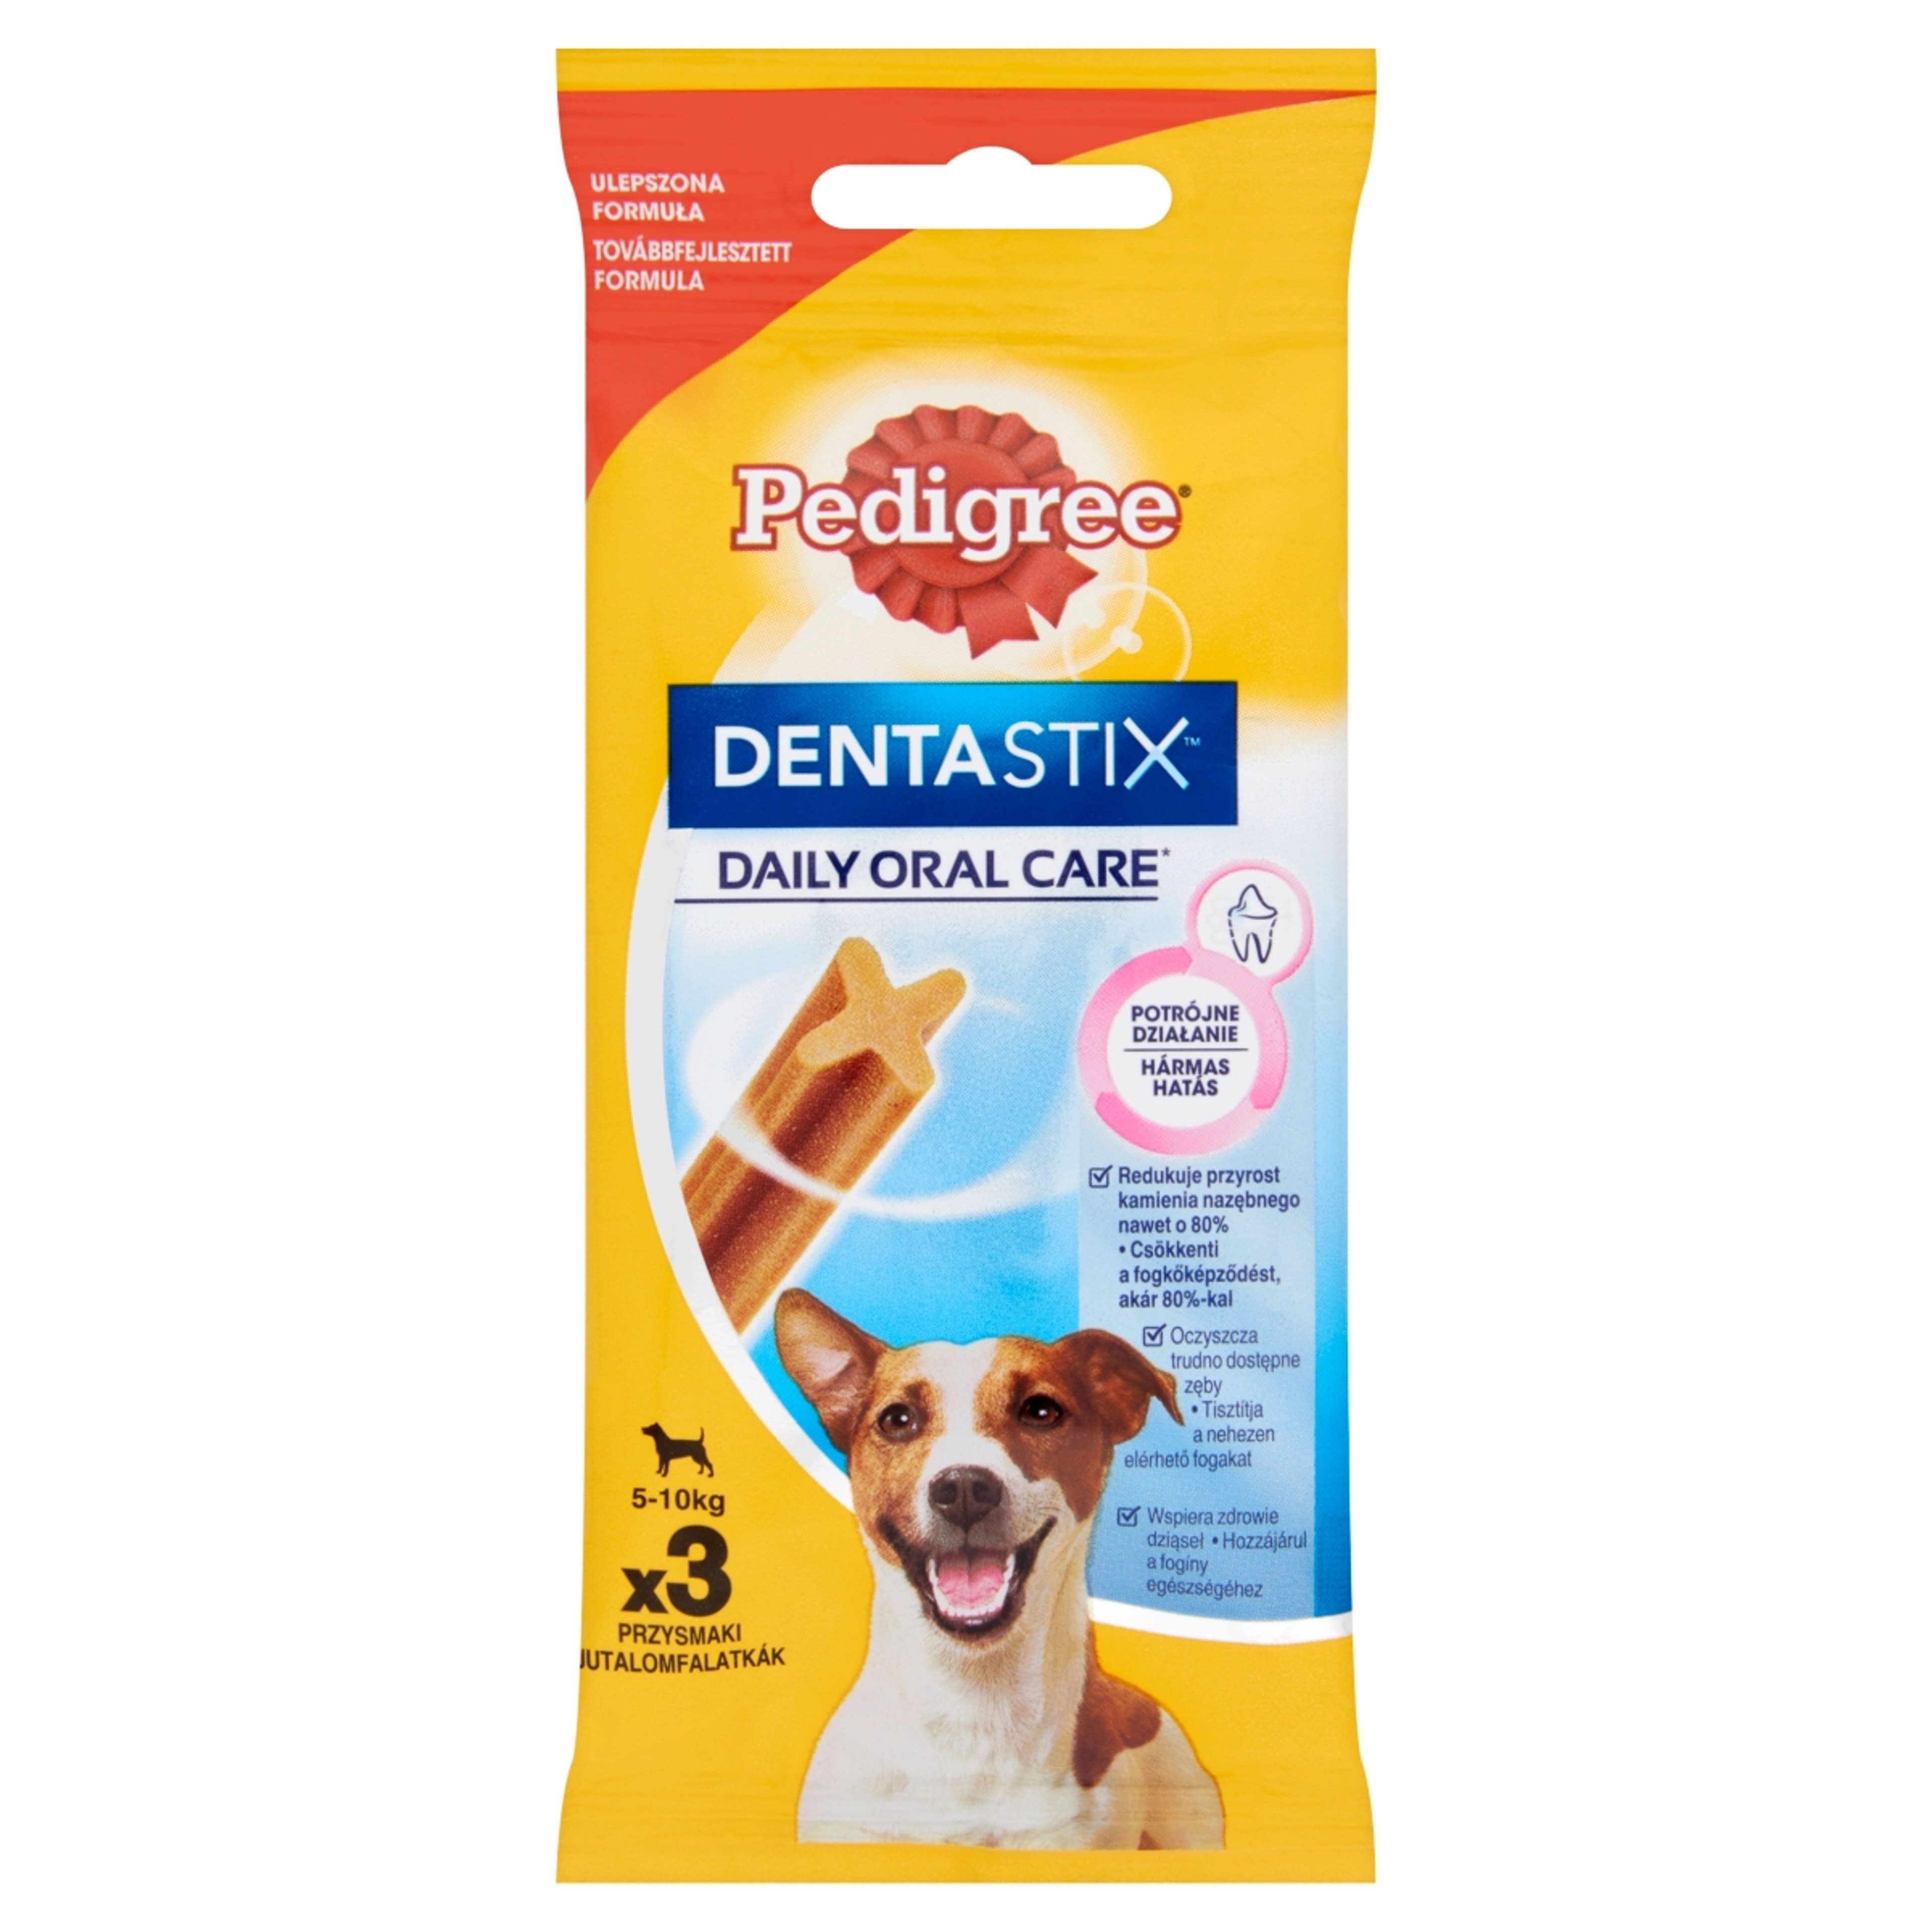 Pedigree DentaStix kistestű és 4 hónapnál idősebb kiegészítő szárazeledel kutyáknak, 3 db - 45 g